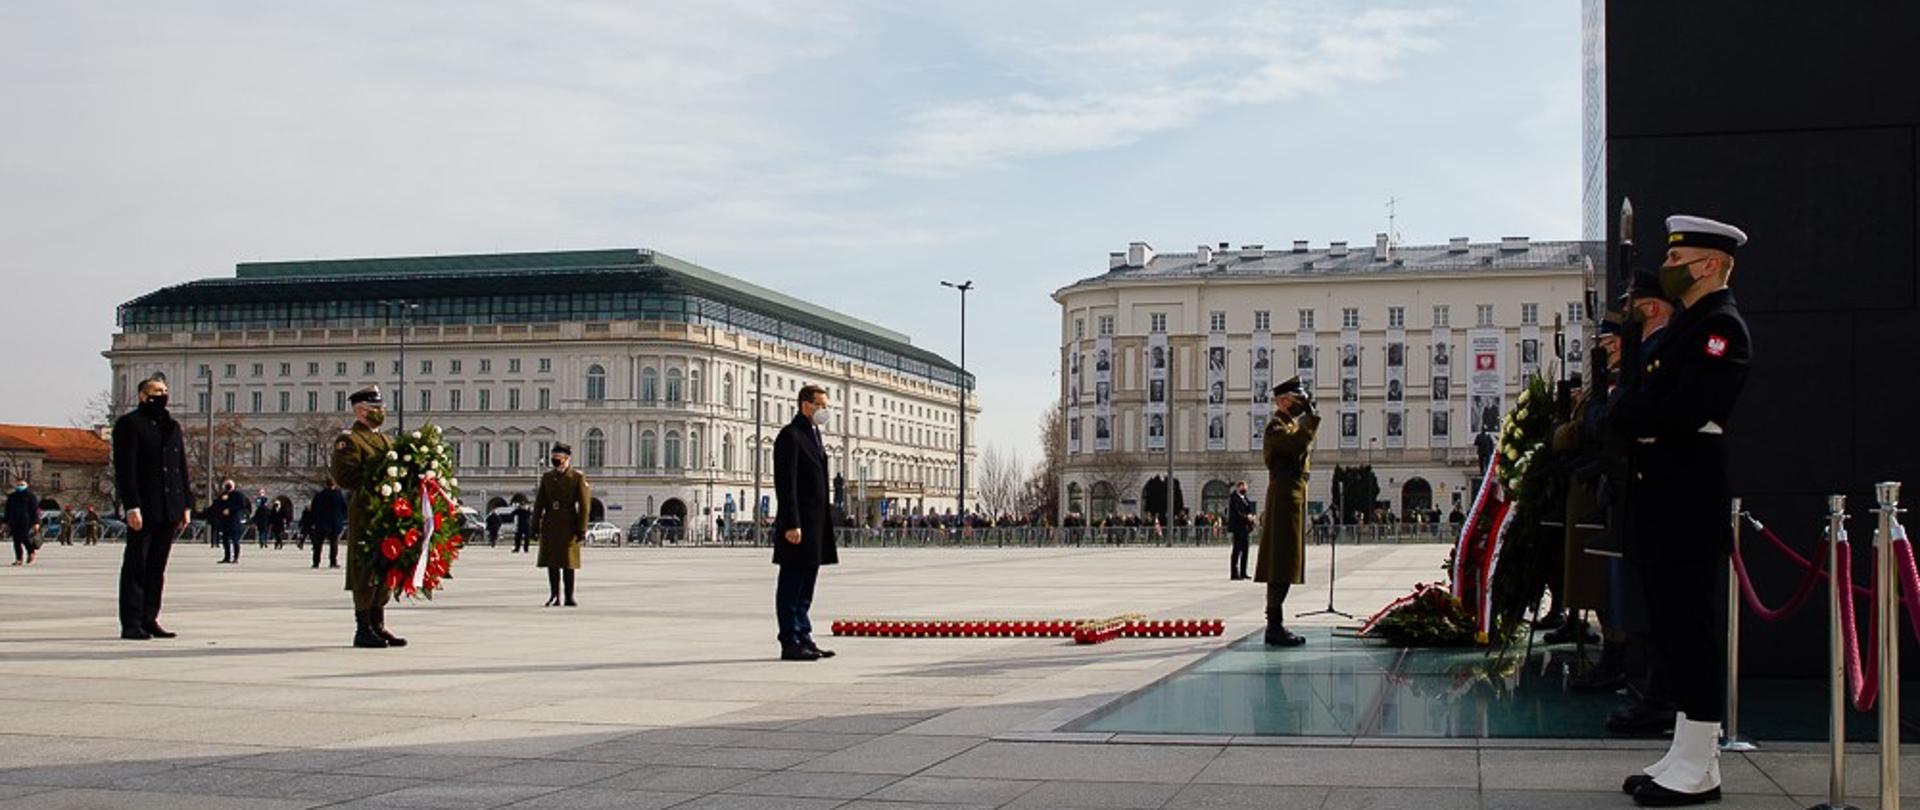 Premier Mateusz Morawiecki stoi z asystą wojskową przed pomnikiem Ofiar Tragedii Smoleńskiej 2010 roku w Warszawie.